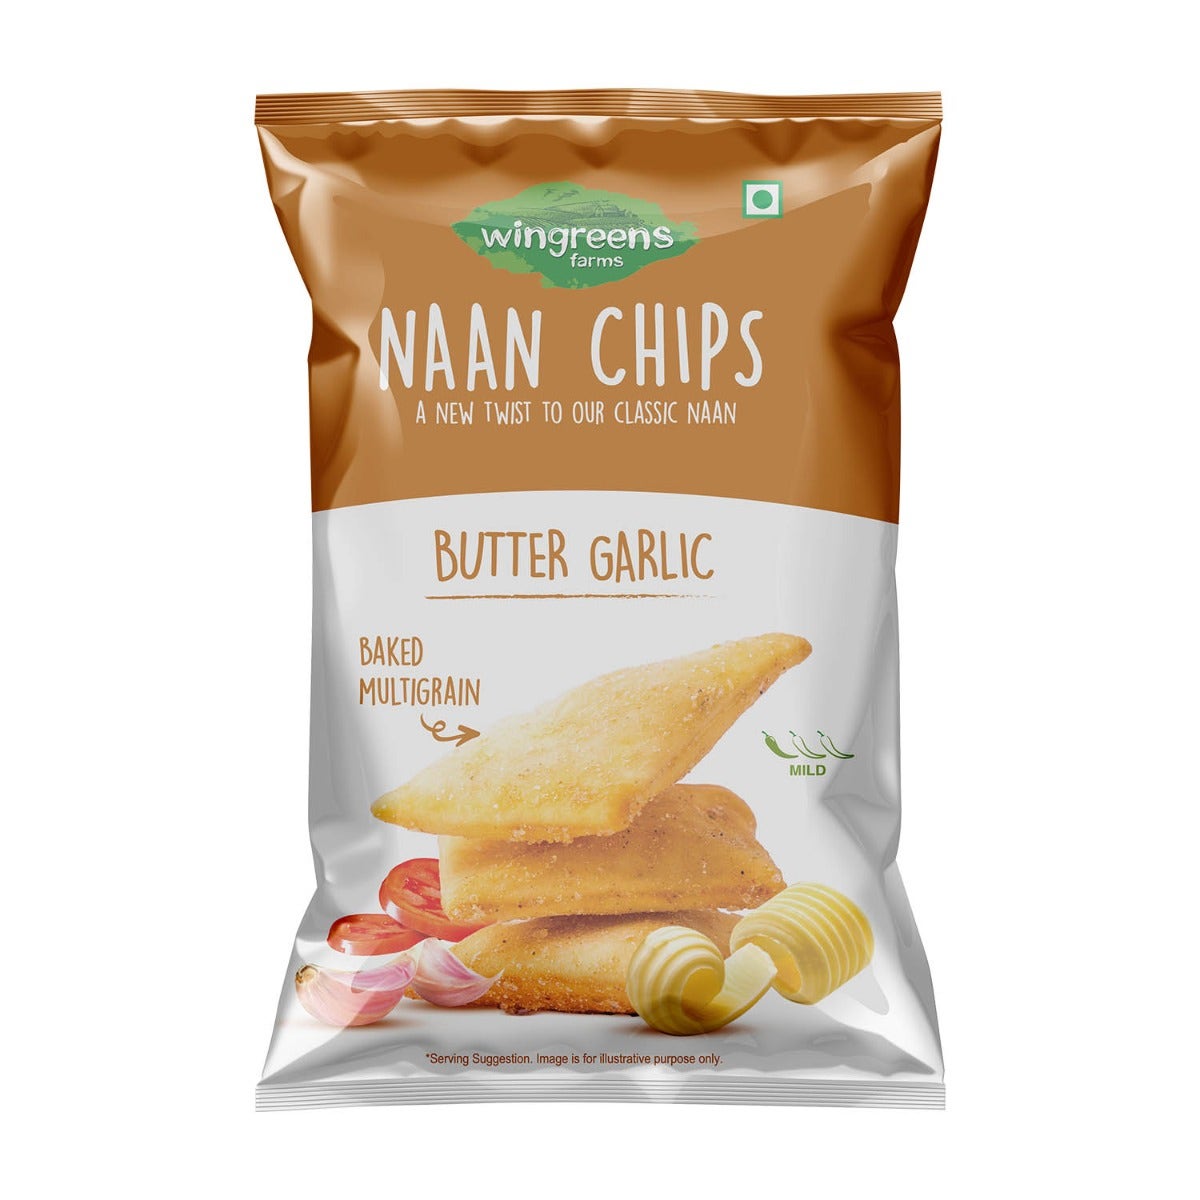 wingreens farms butter garlic naan chips